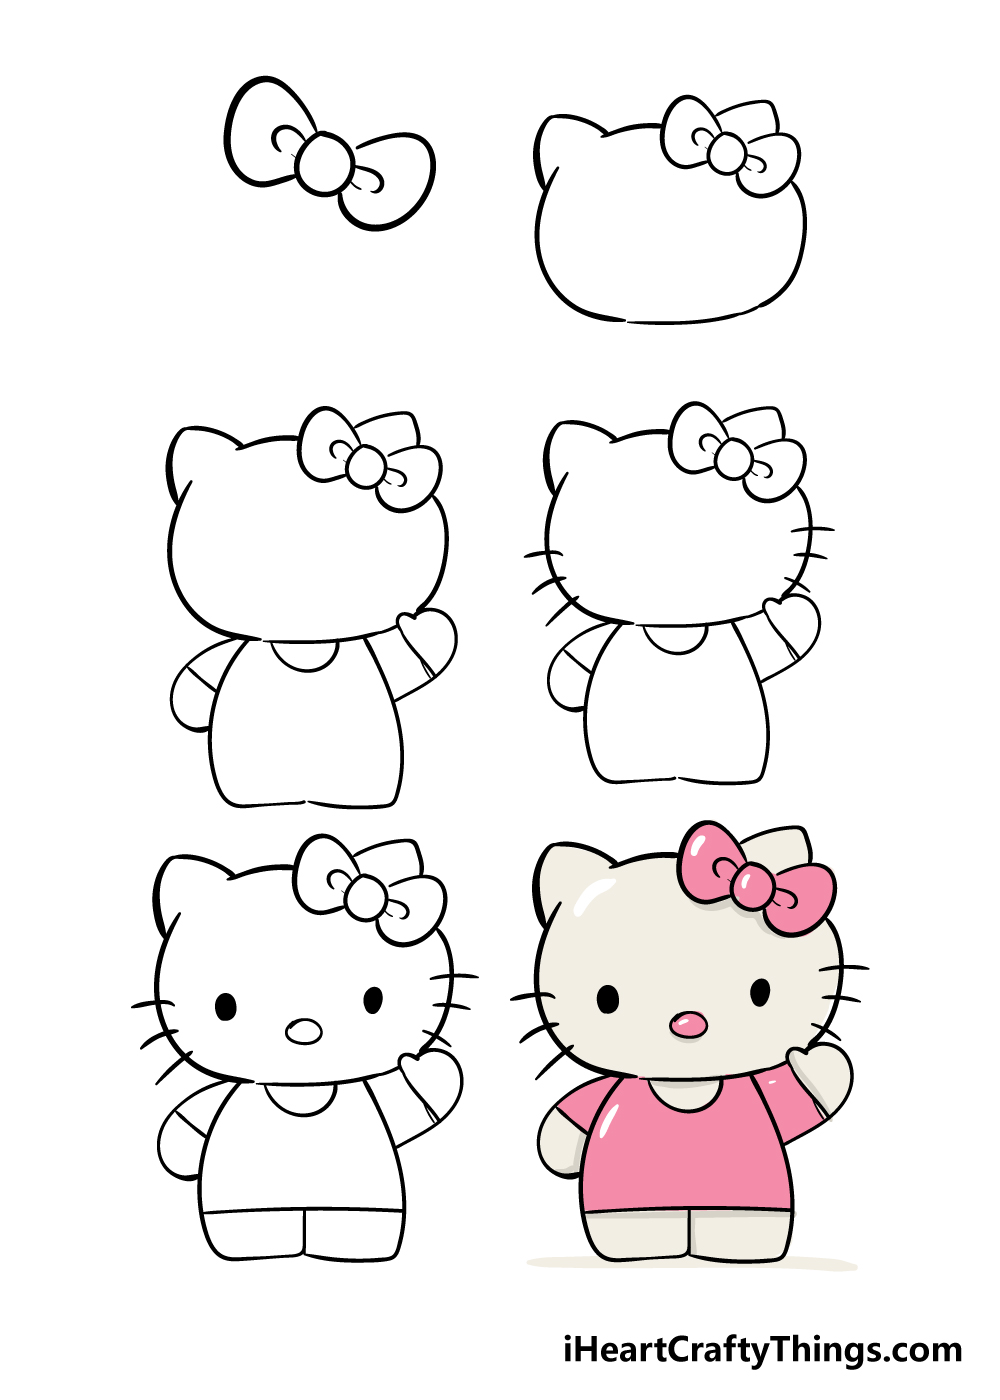 hello kitty in 6 steps - Hướng dẫn cách vẽ hello kitty đơn giản với 6 bước cơ bản